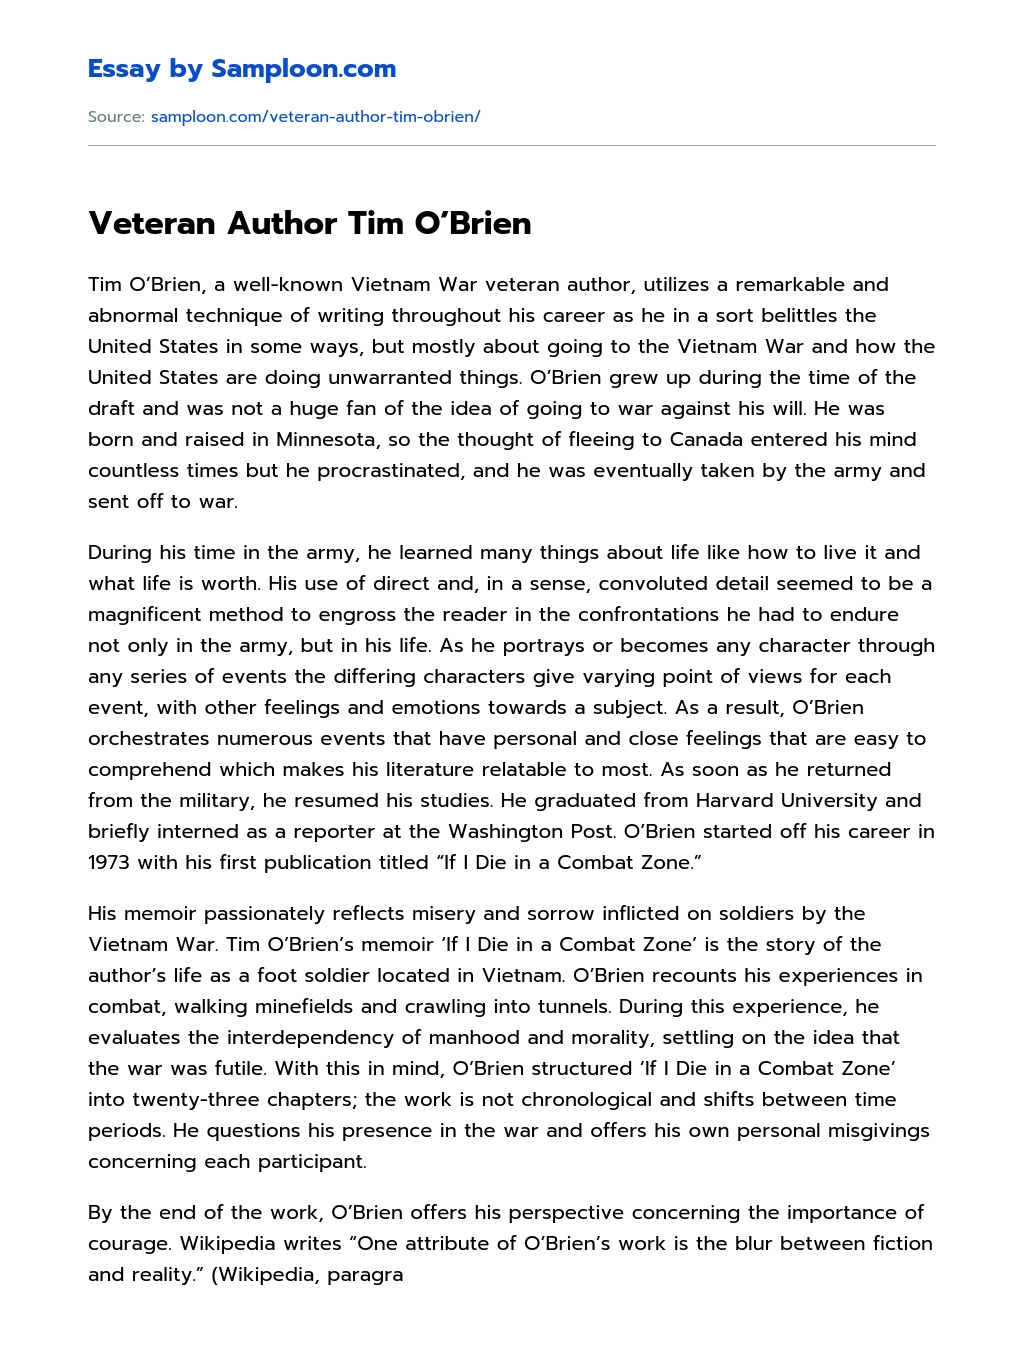 Veteran Author Tim O’Brien essay